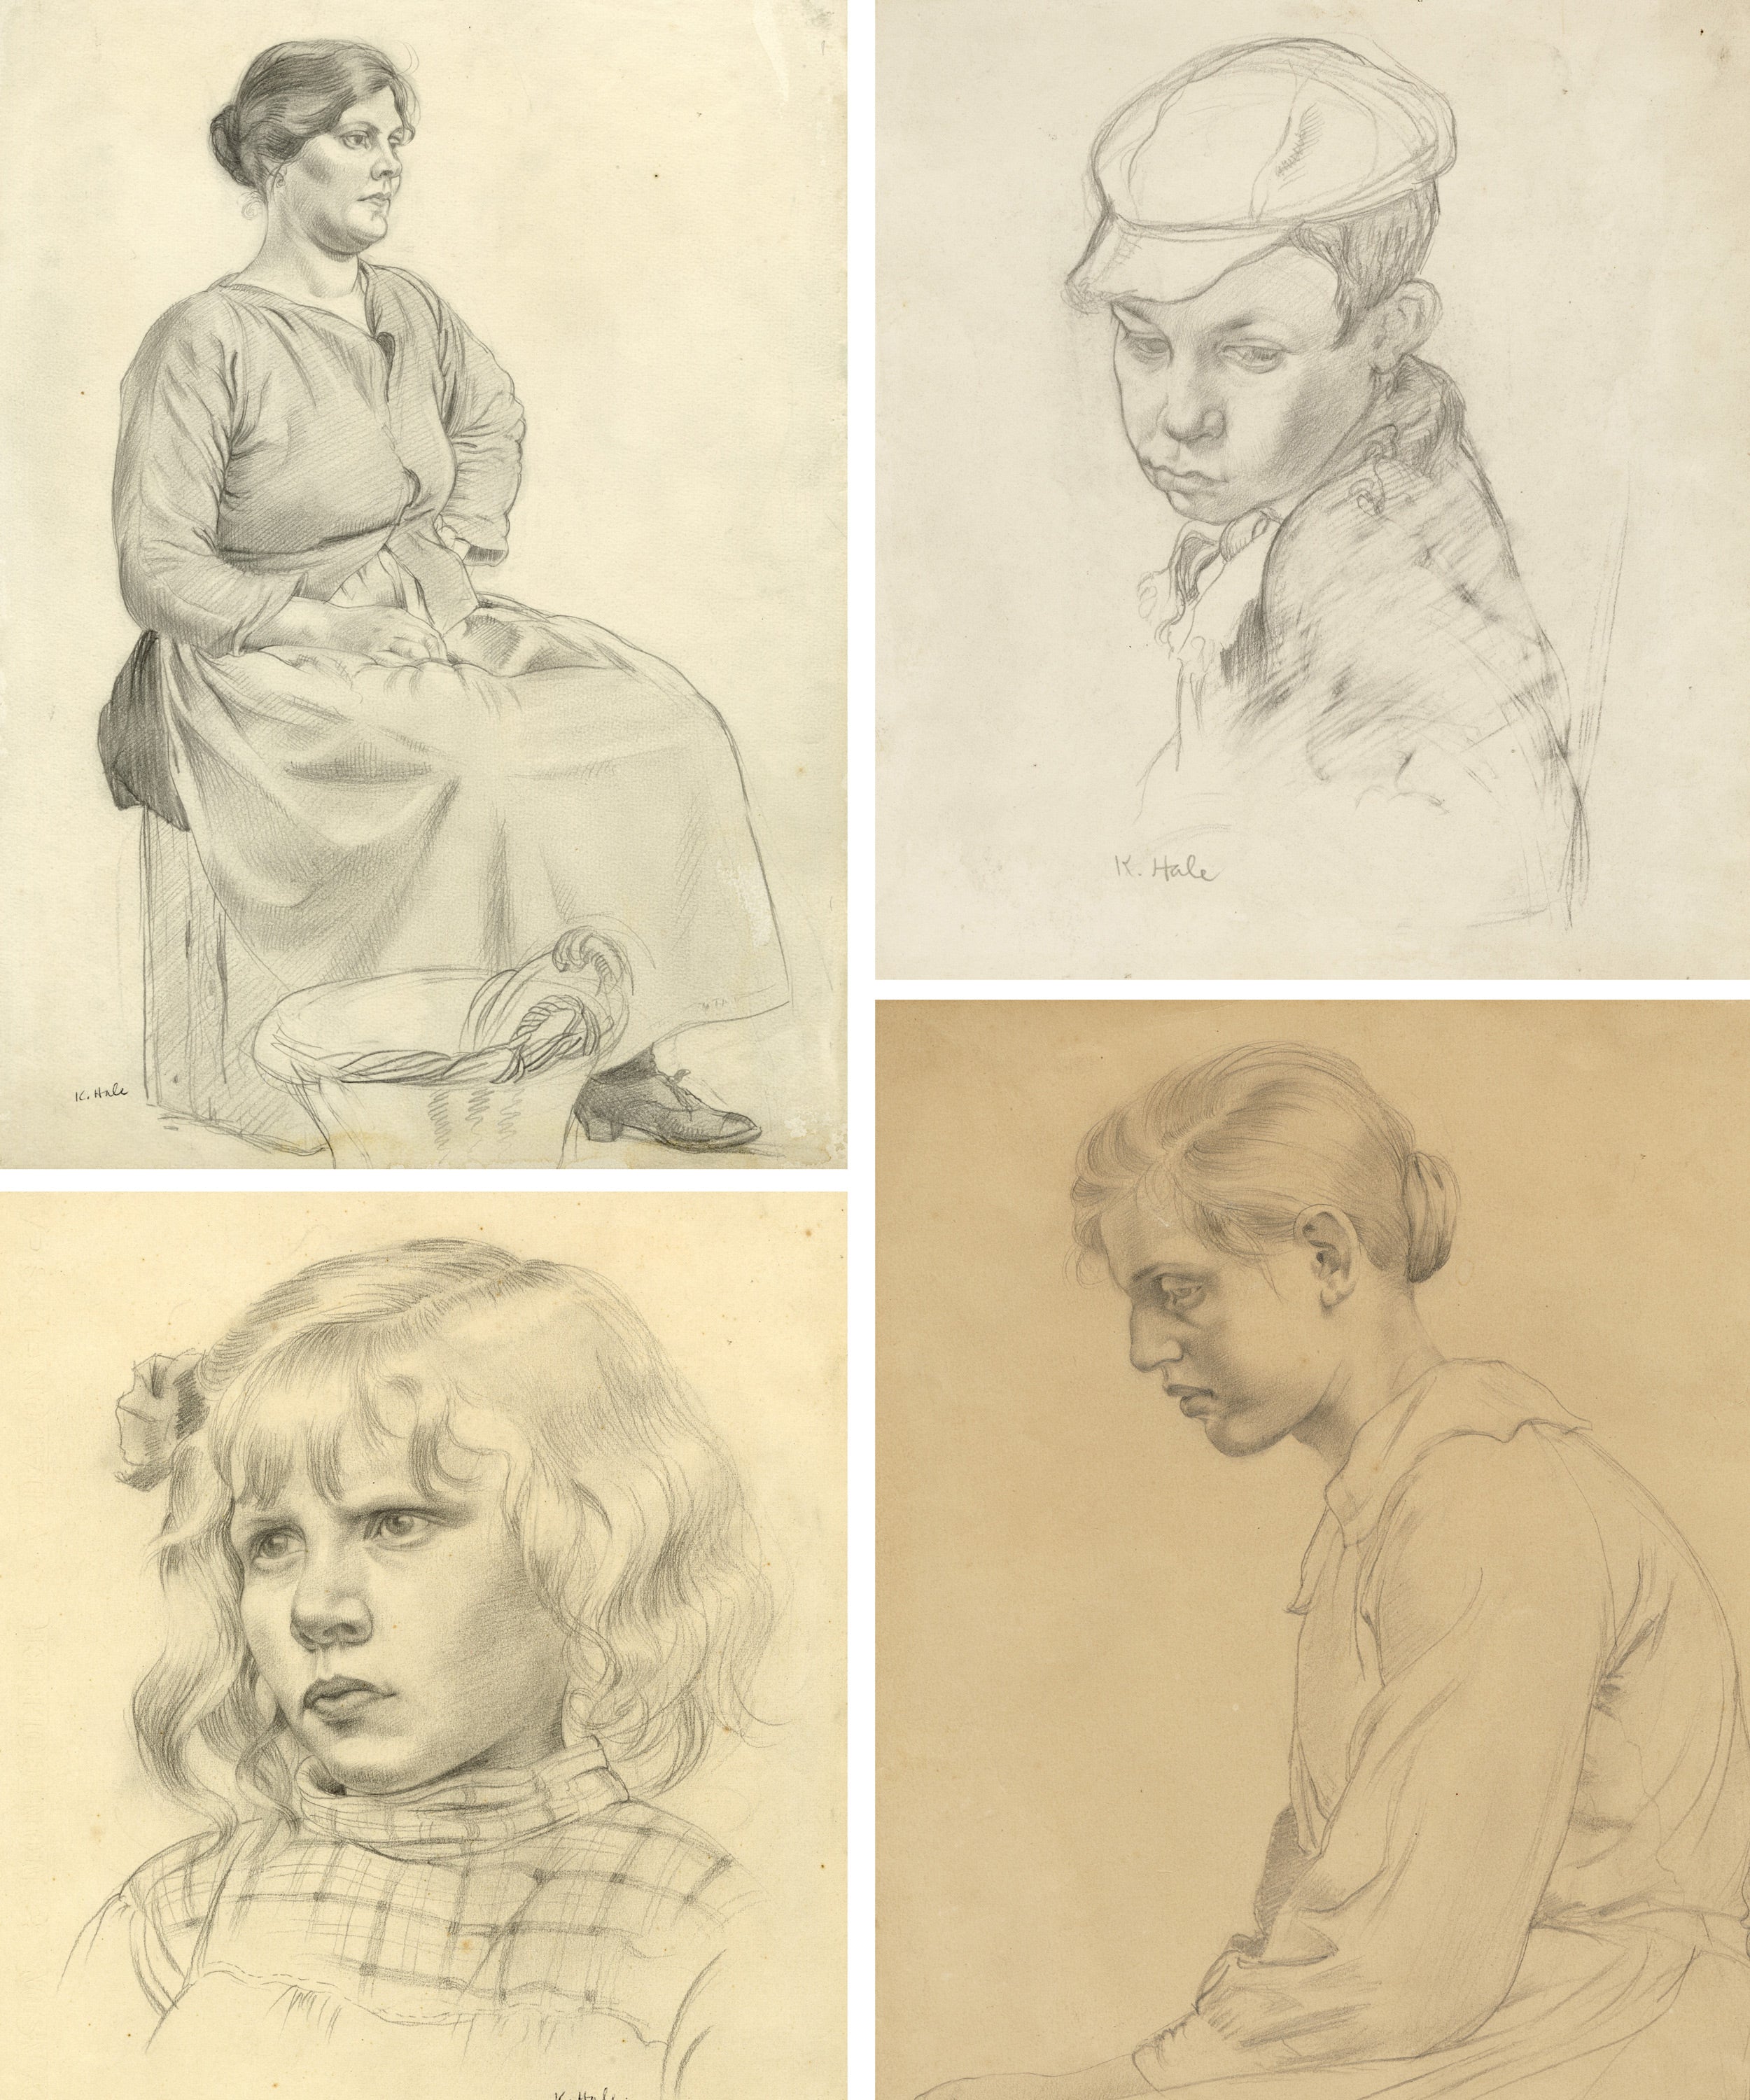 Kathleen Hale portraits, pencil on paper